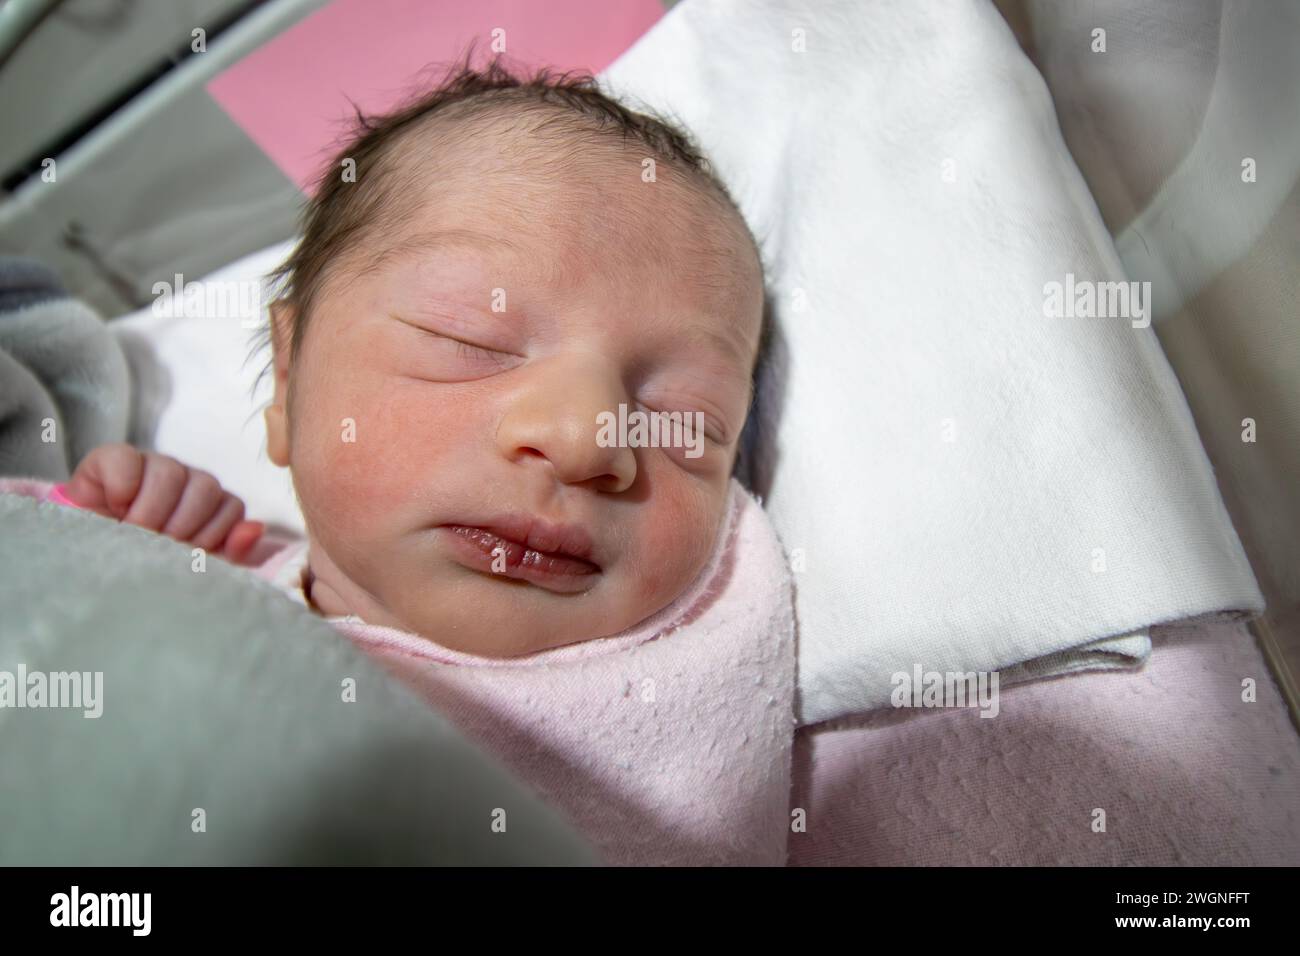 Nel suo primo giorno di vita, una neonata indossa un braccialetto rosa per l'identificazione dell'ospedale sulla sua mano Foto Stock